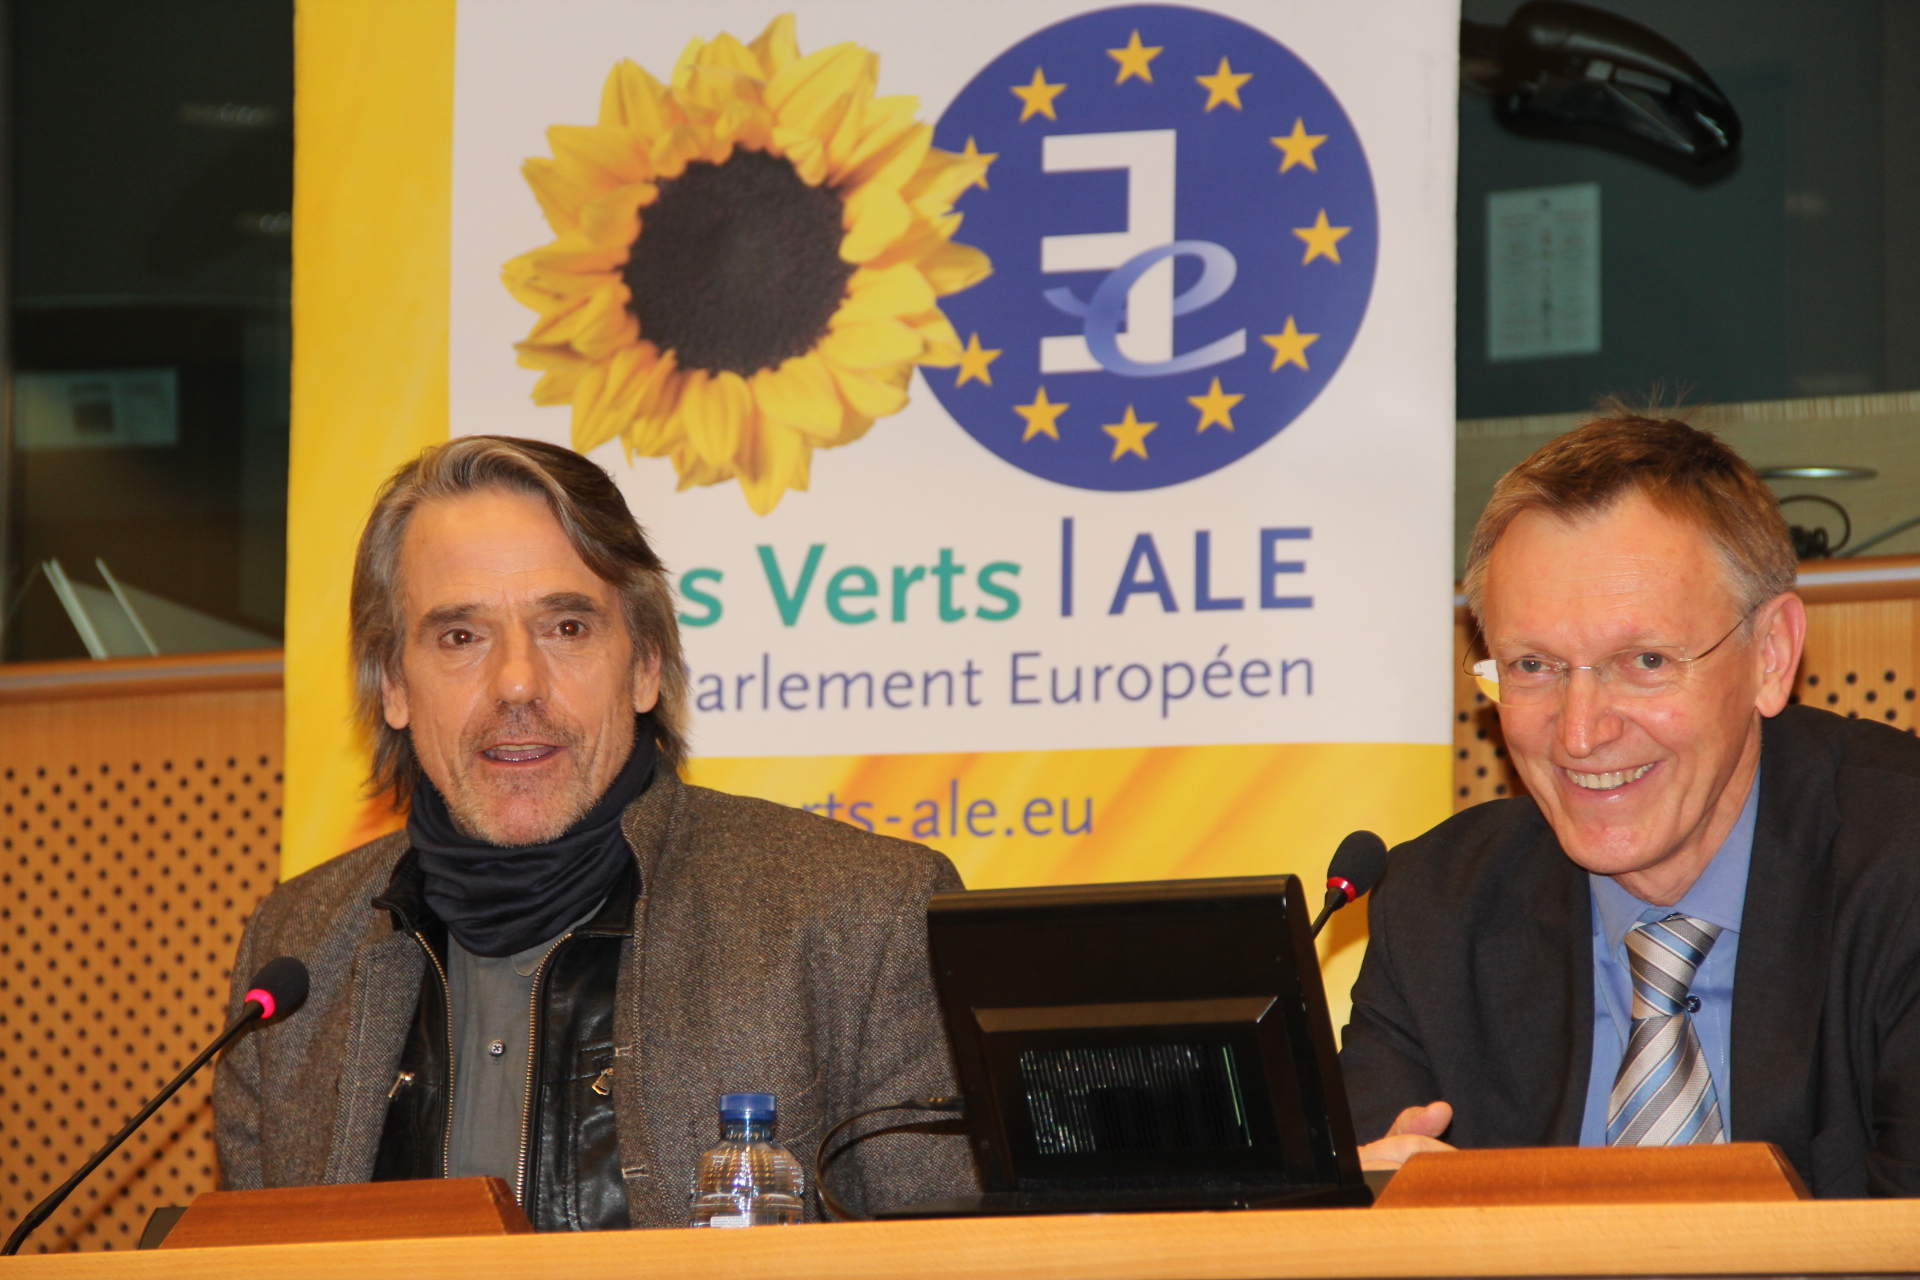 Prima conferință Zero Waste Europe la Parlamentul Europei: Actorul Jeremy Irons și comisarul de mediu Janez Potocnik susțin obiectivele Zero Waste